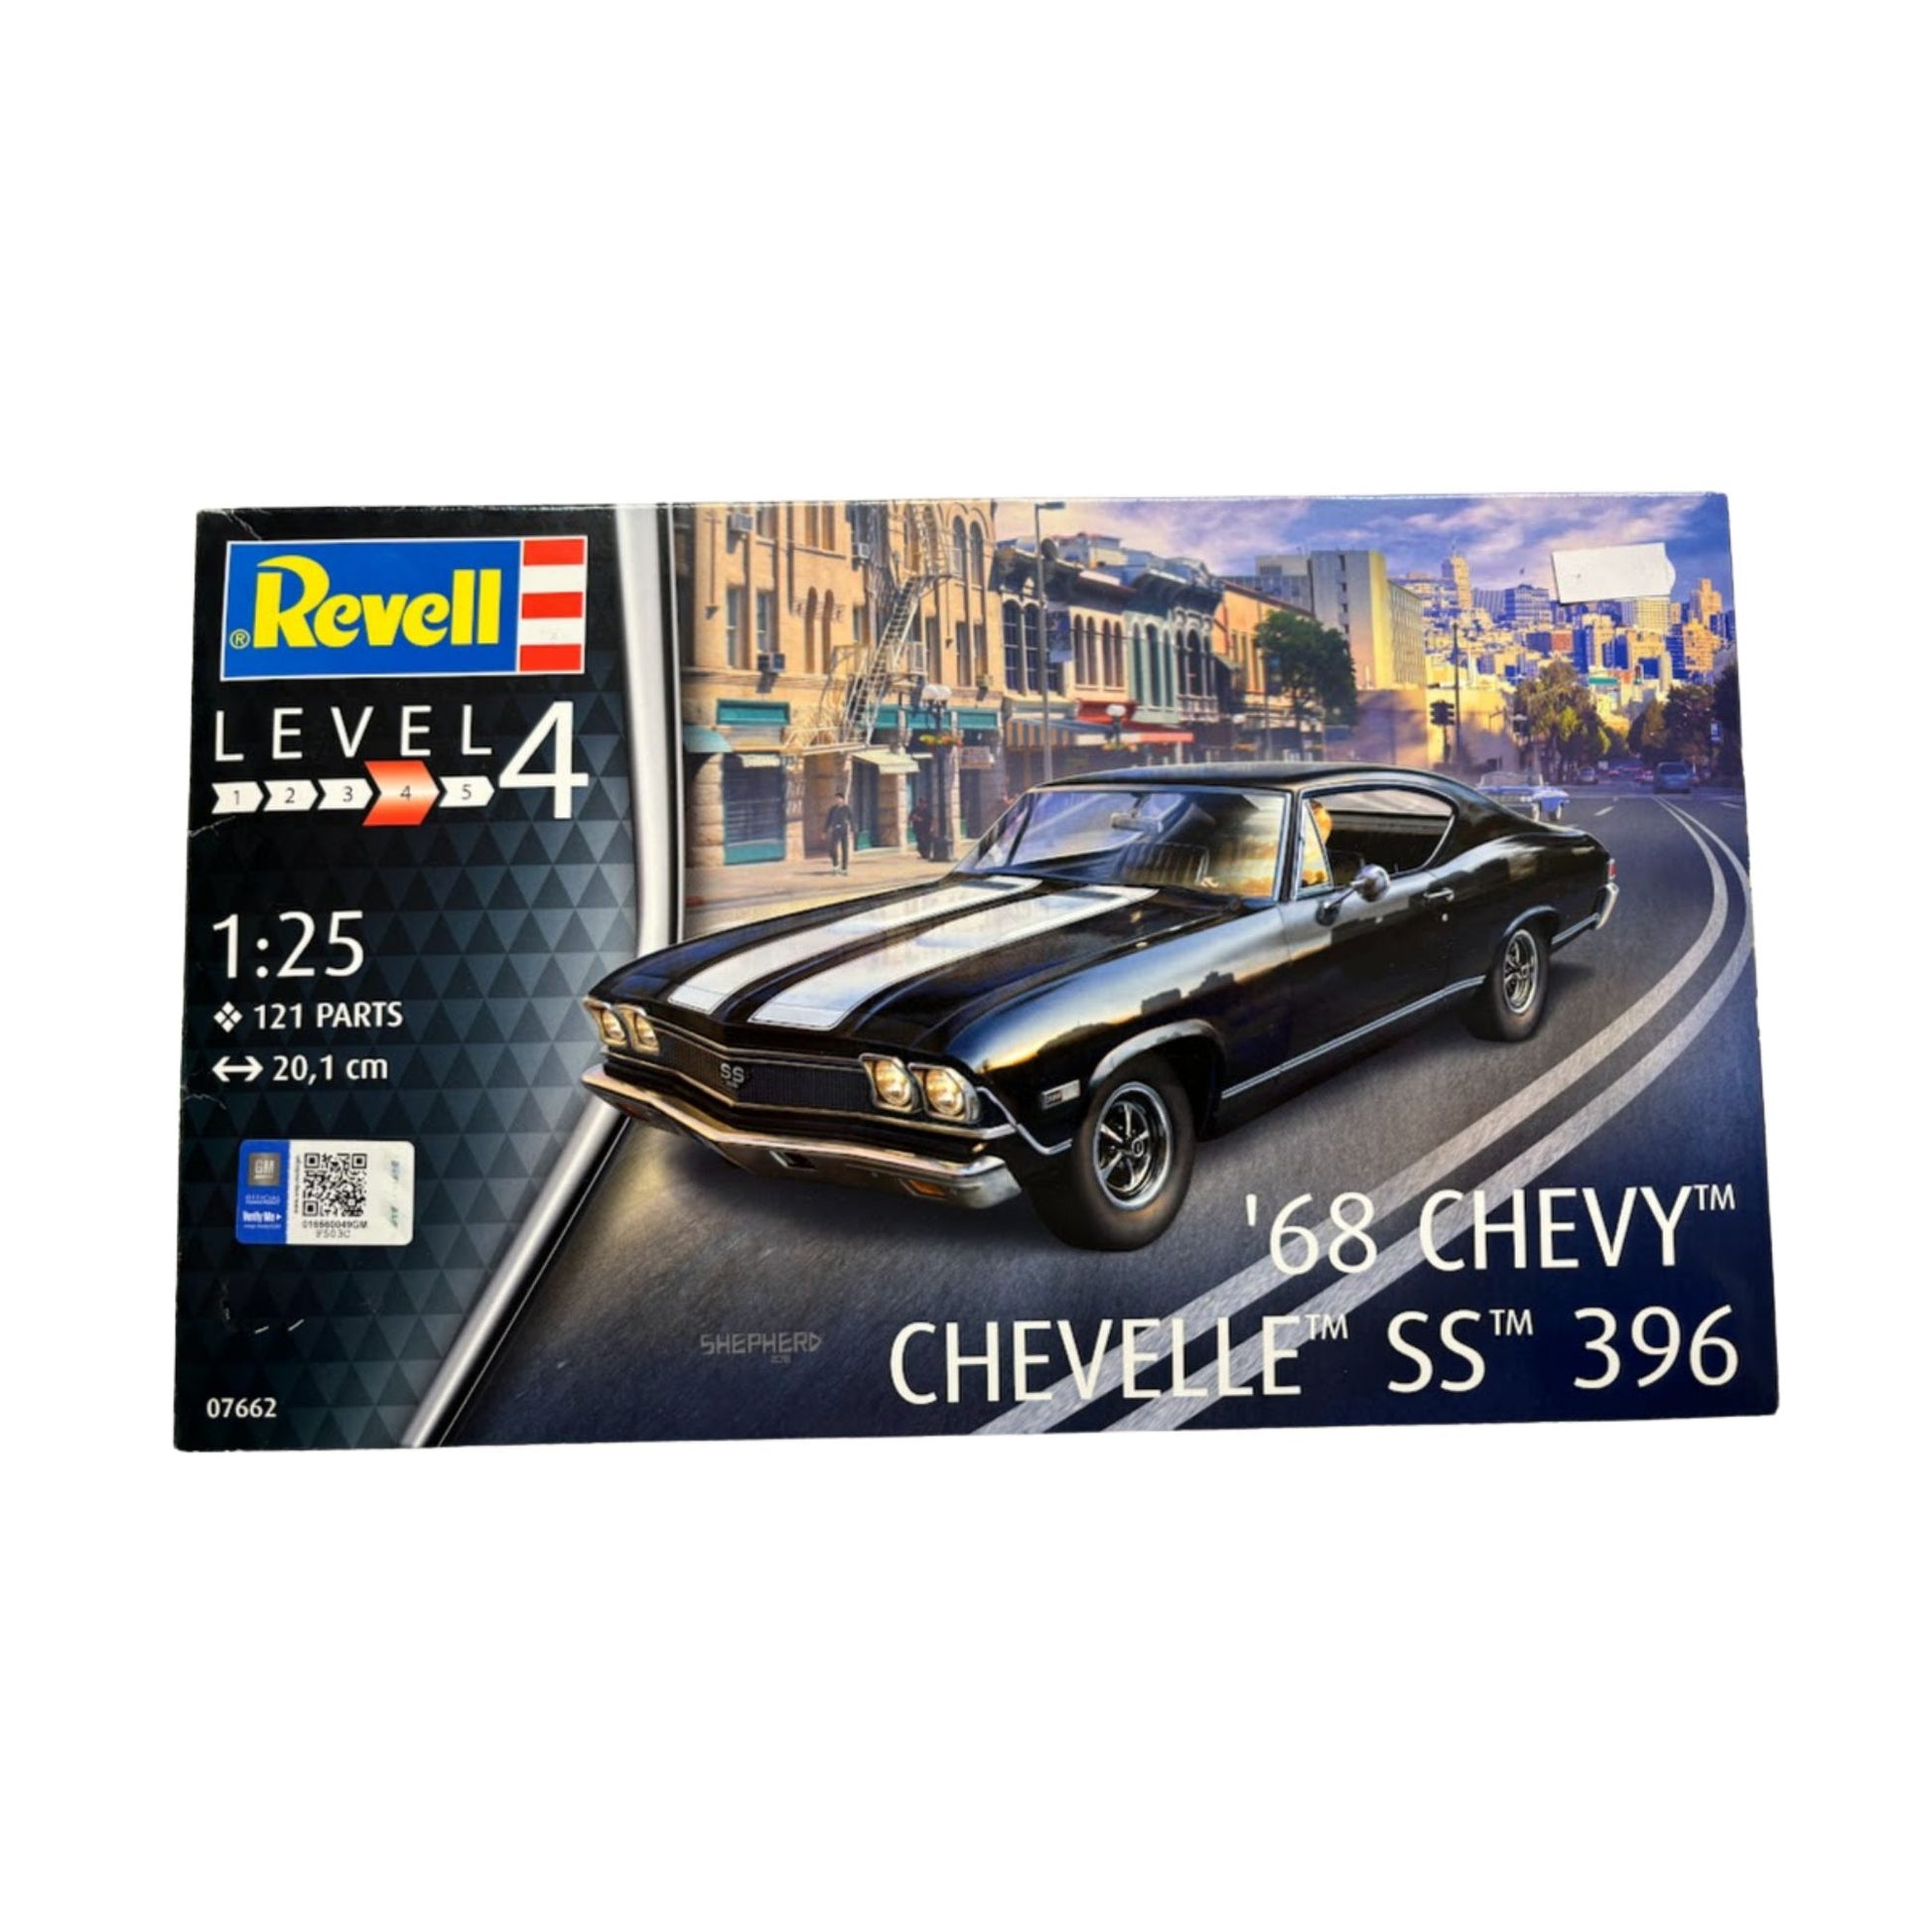 Revell car model kit 68 Chevy Shevelle SS 396